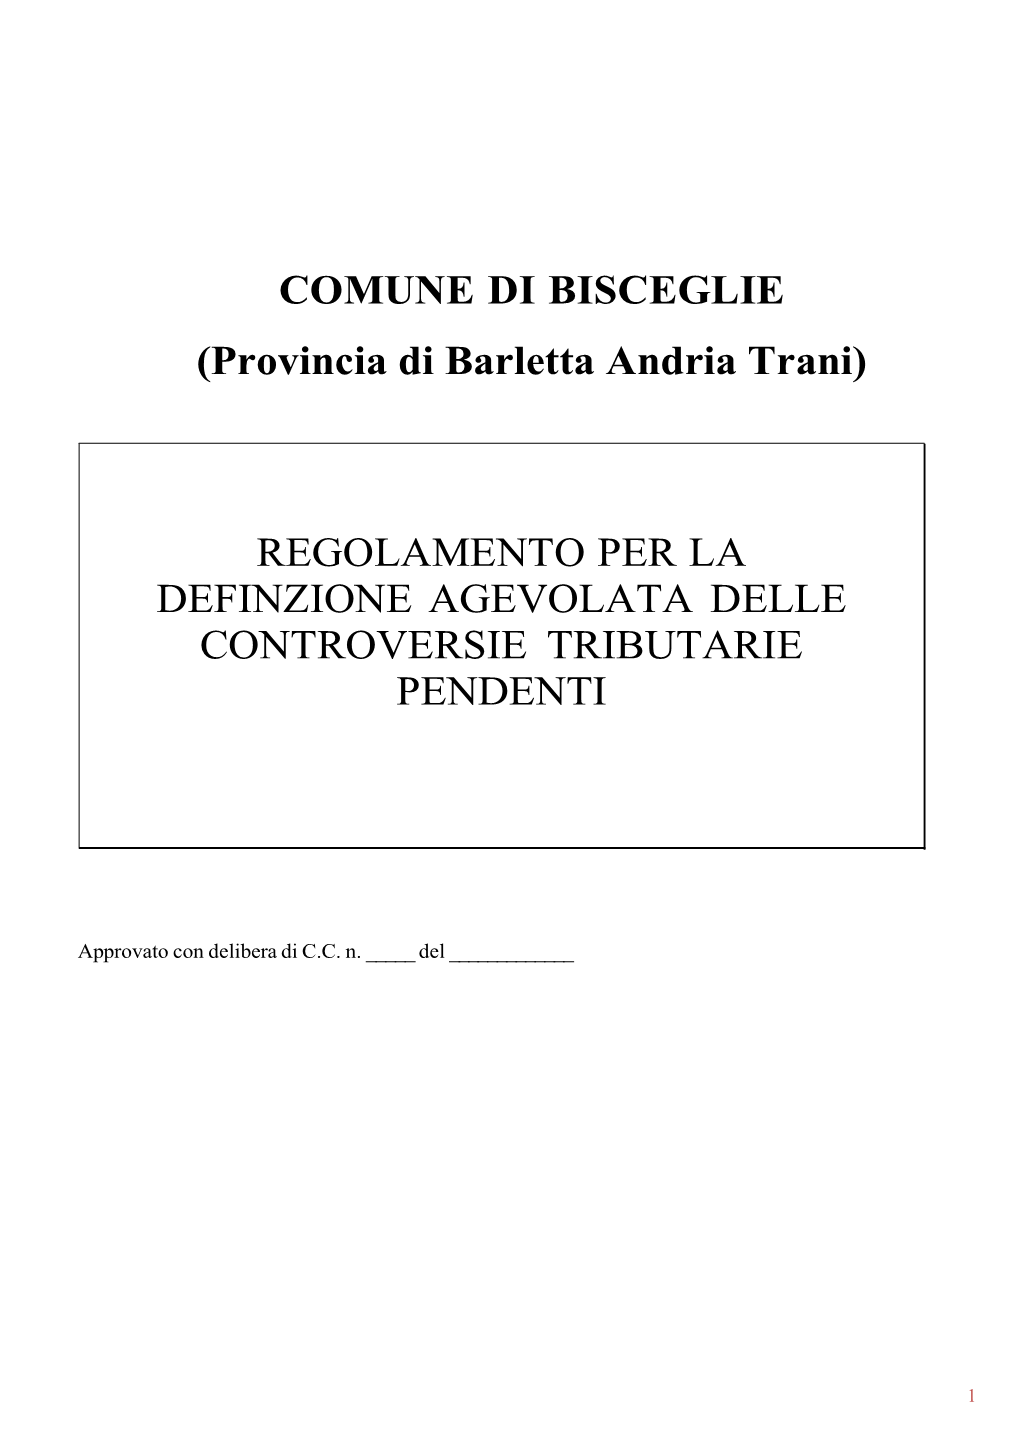 COMUNE DI BISCEGLIE (Provincia Di Barletta Andria Trani)